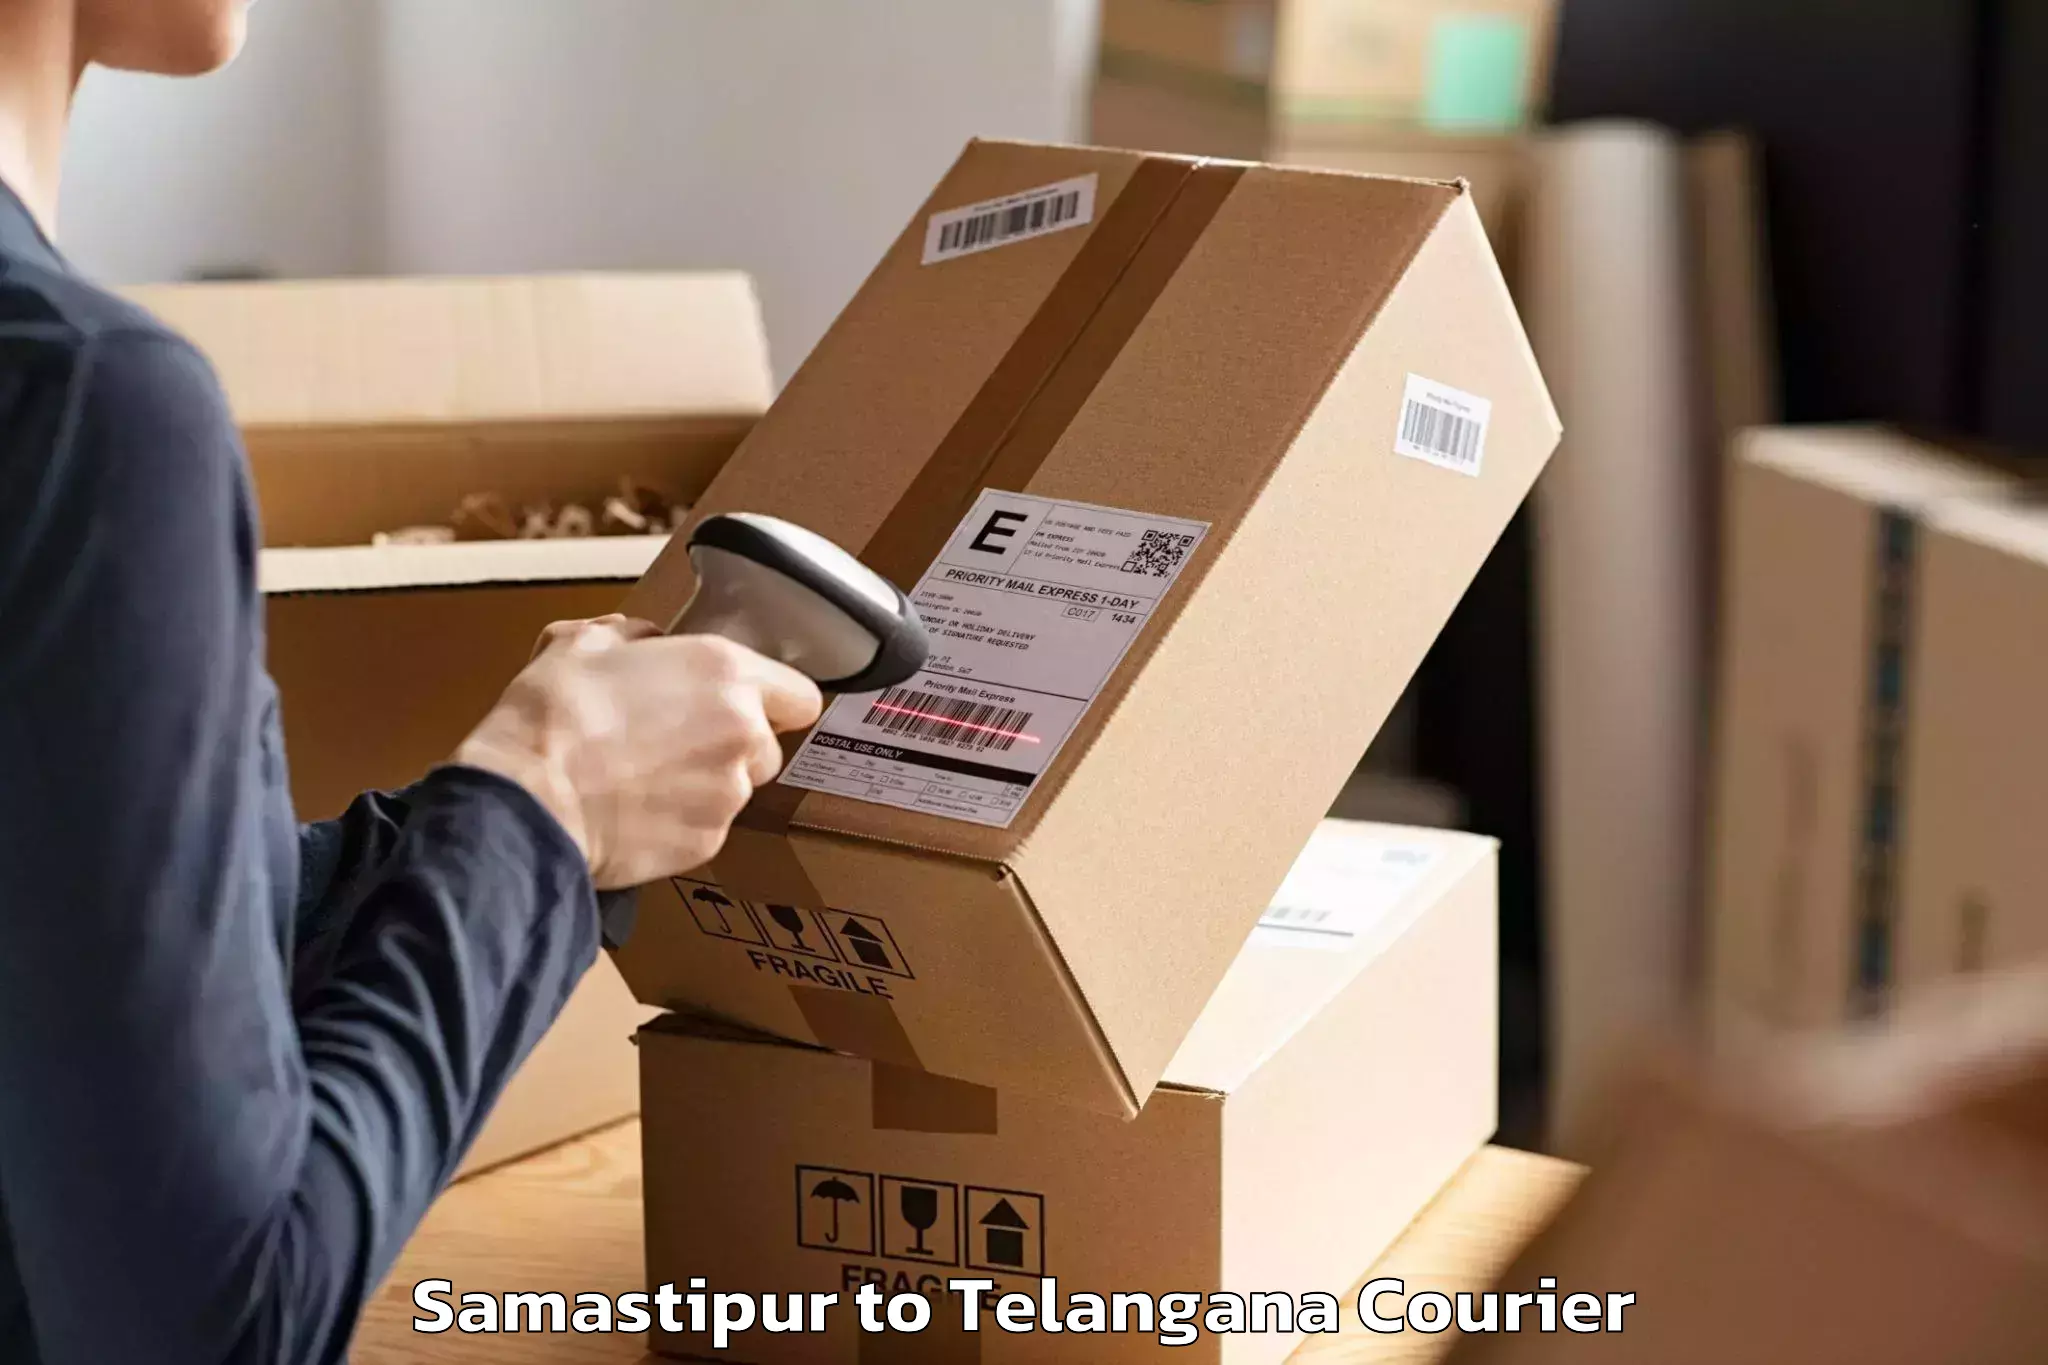 Furniture delivery service Samastipur to Ibrahimpatnam